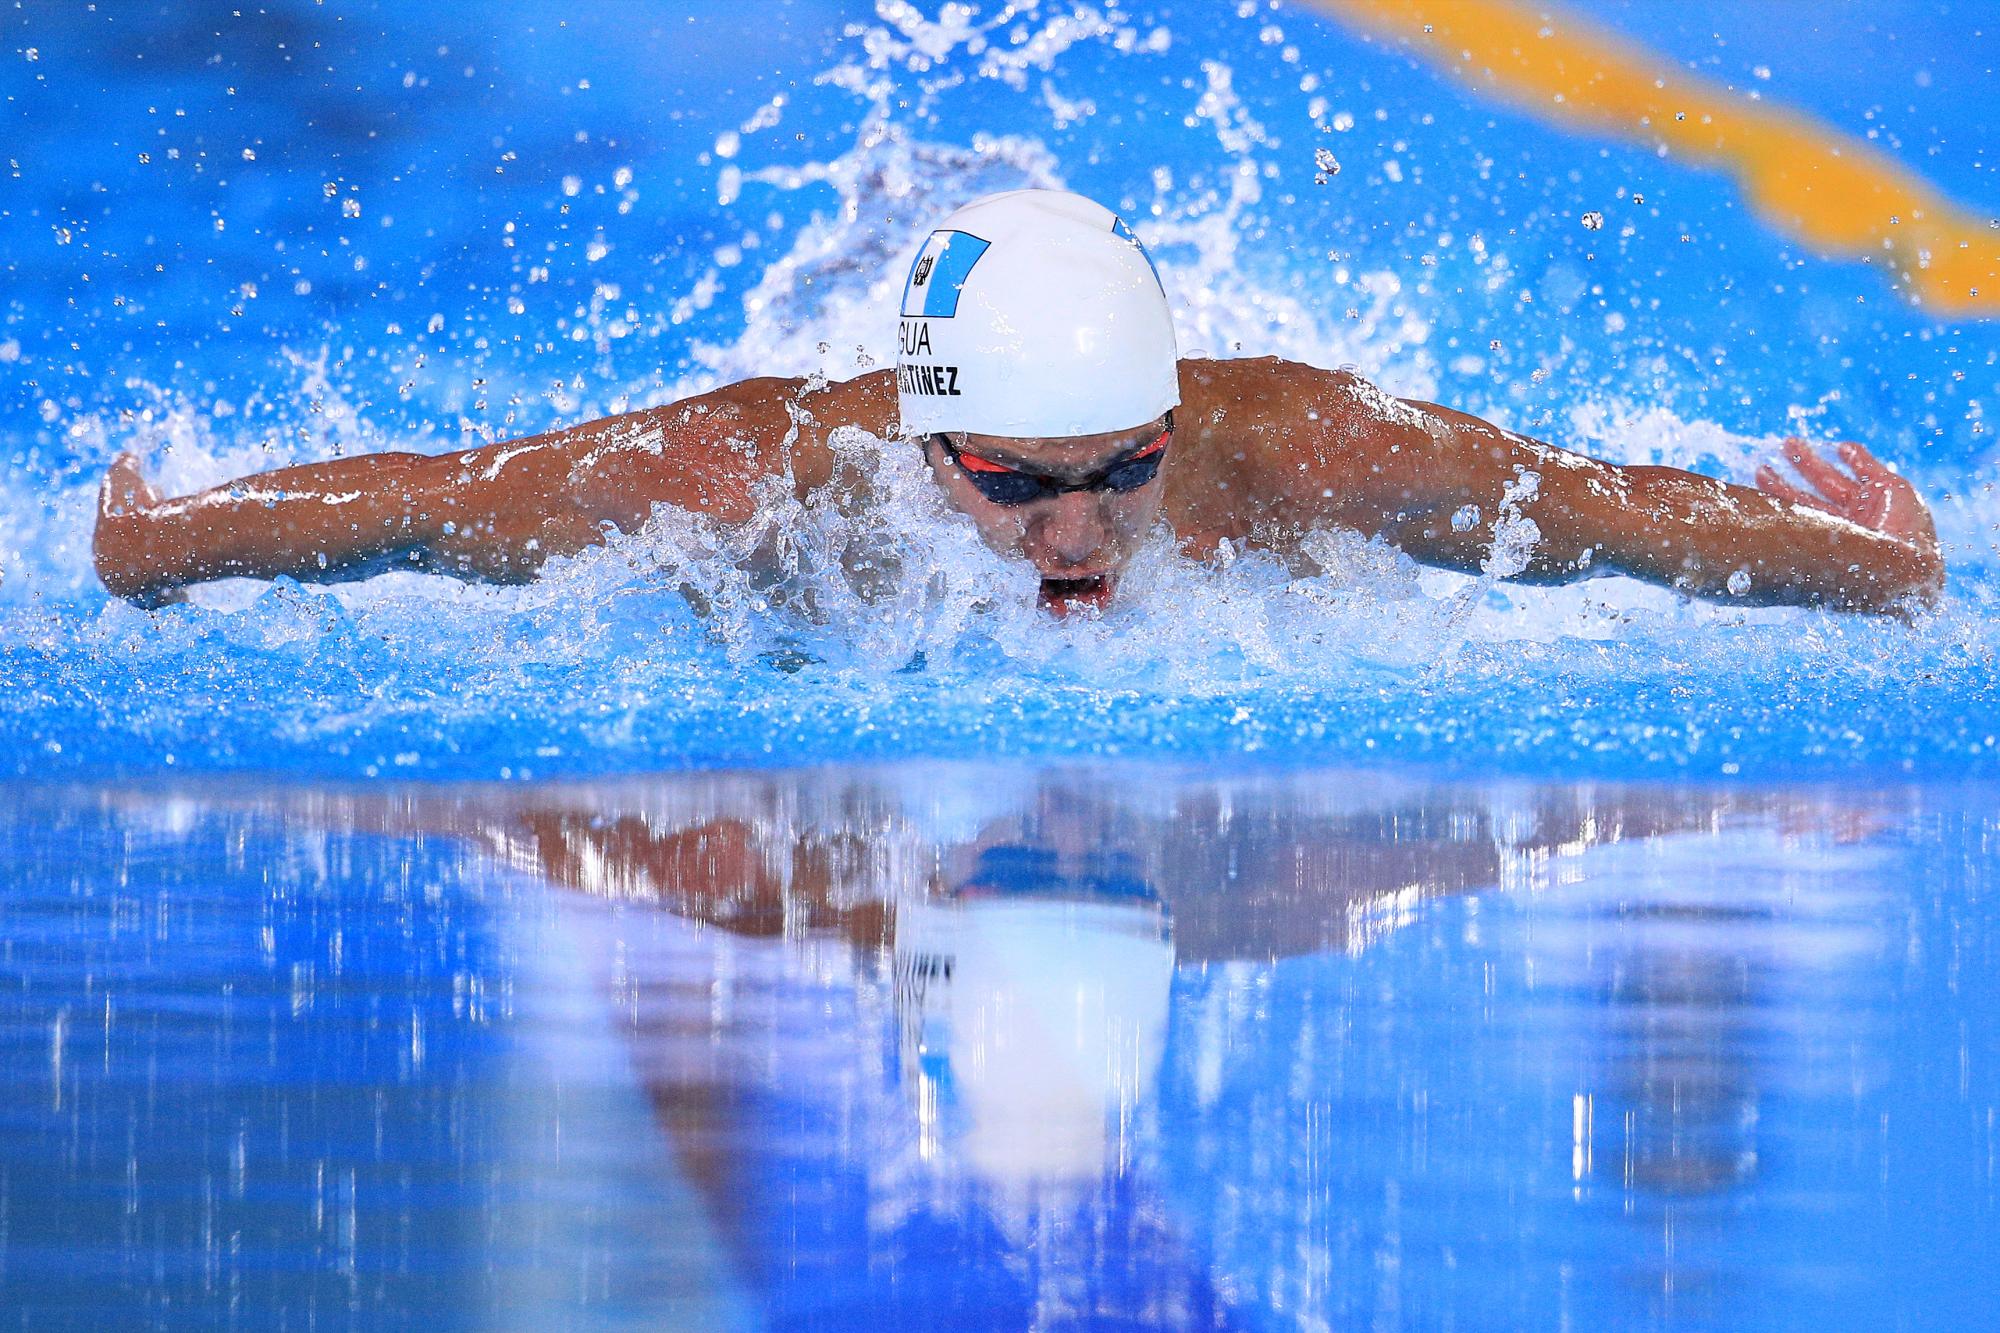 $!Estadounidense Caeleb Dressel gana el oro en 100 metros mariposa y rompe récord mundial